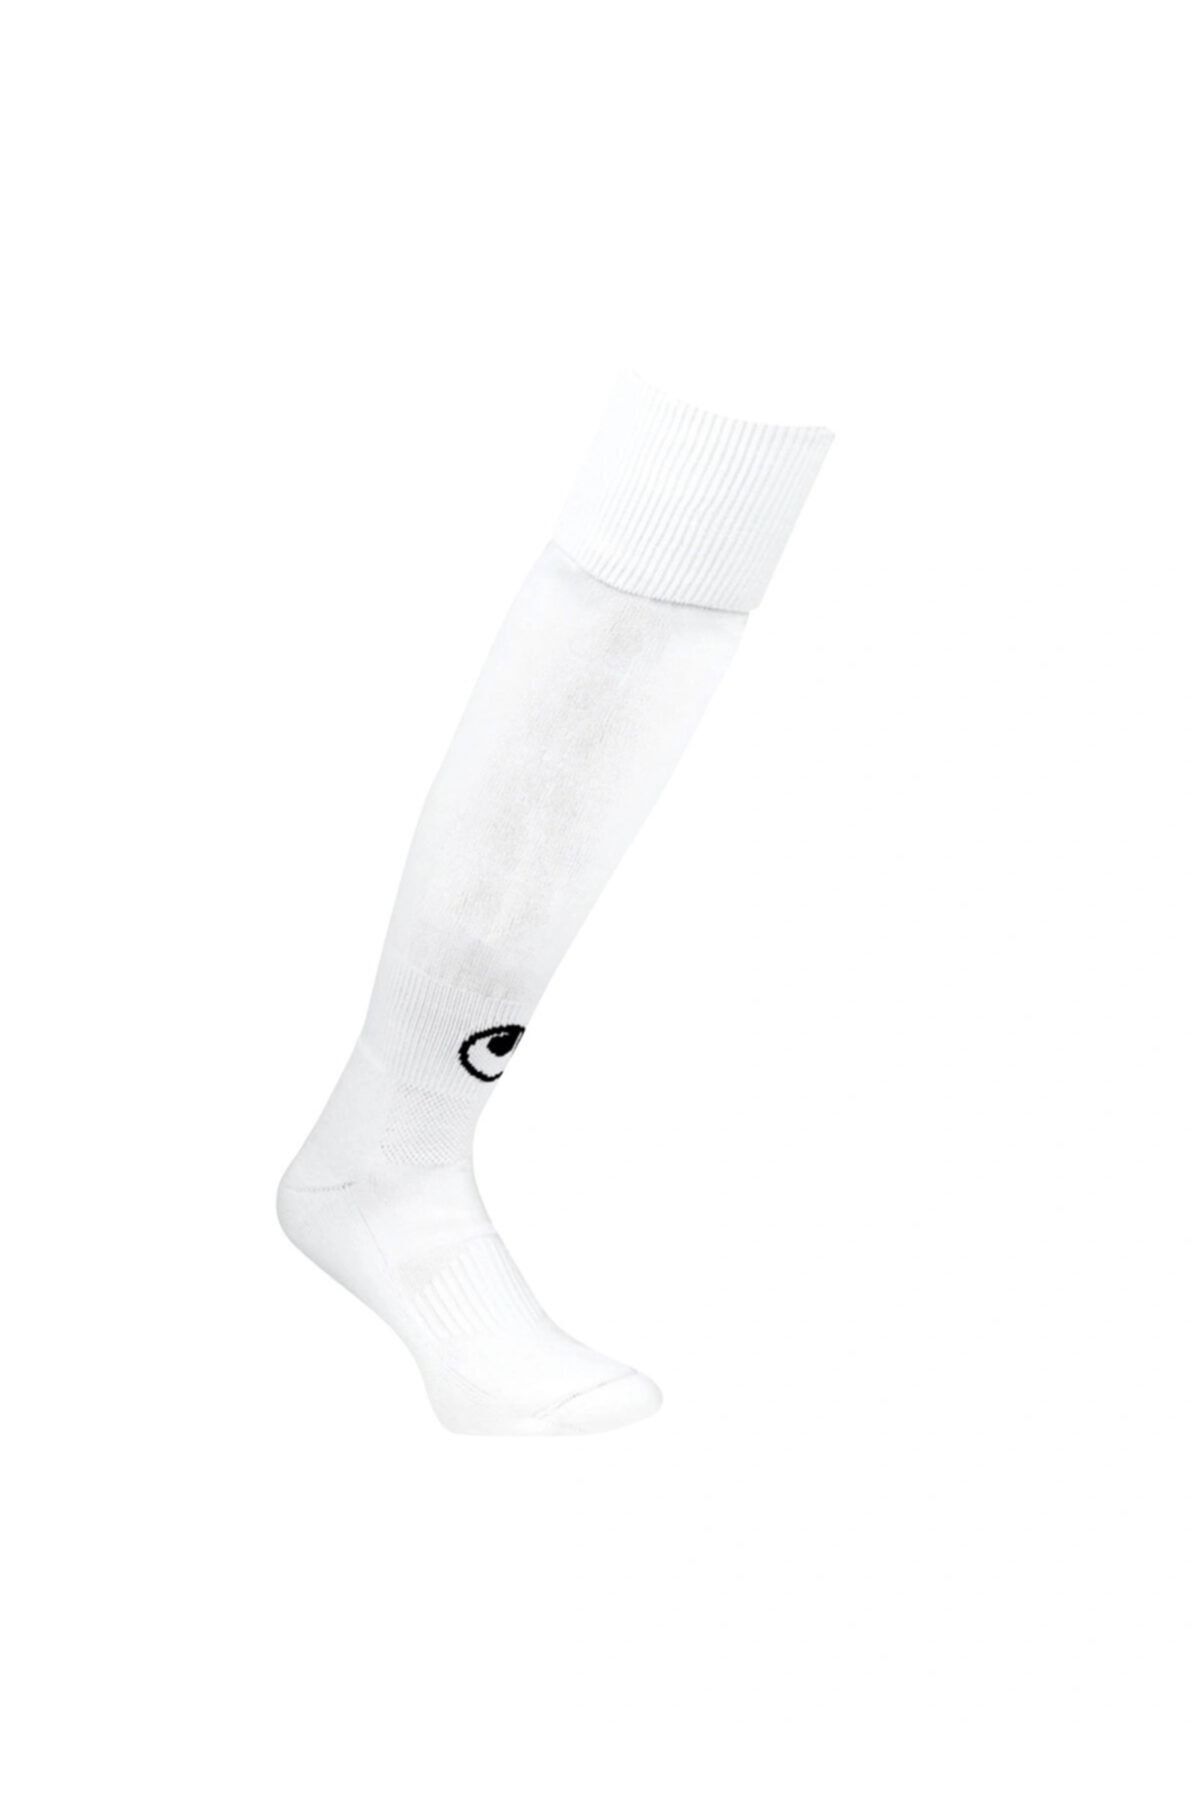 uhlsport 1003301 Futbol Çorabı Tozluk (40-45) Beyaz Siyah Çorap